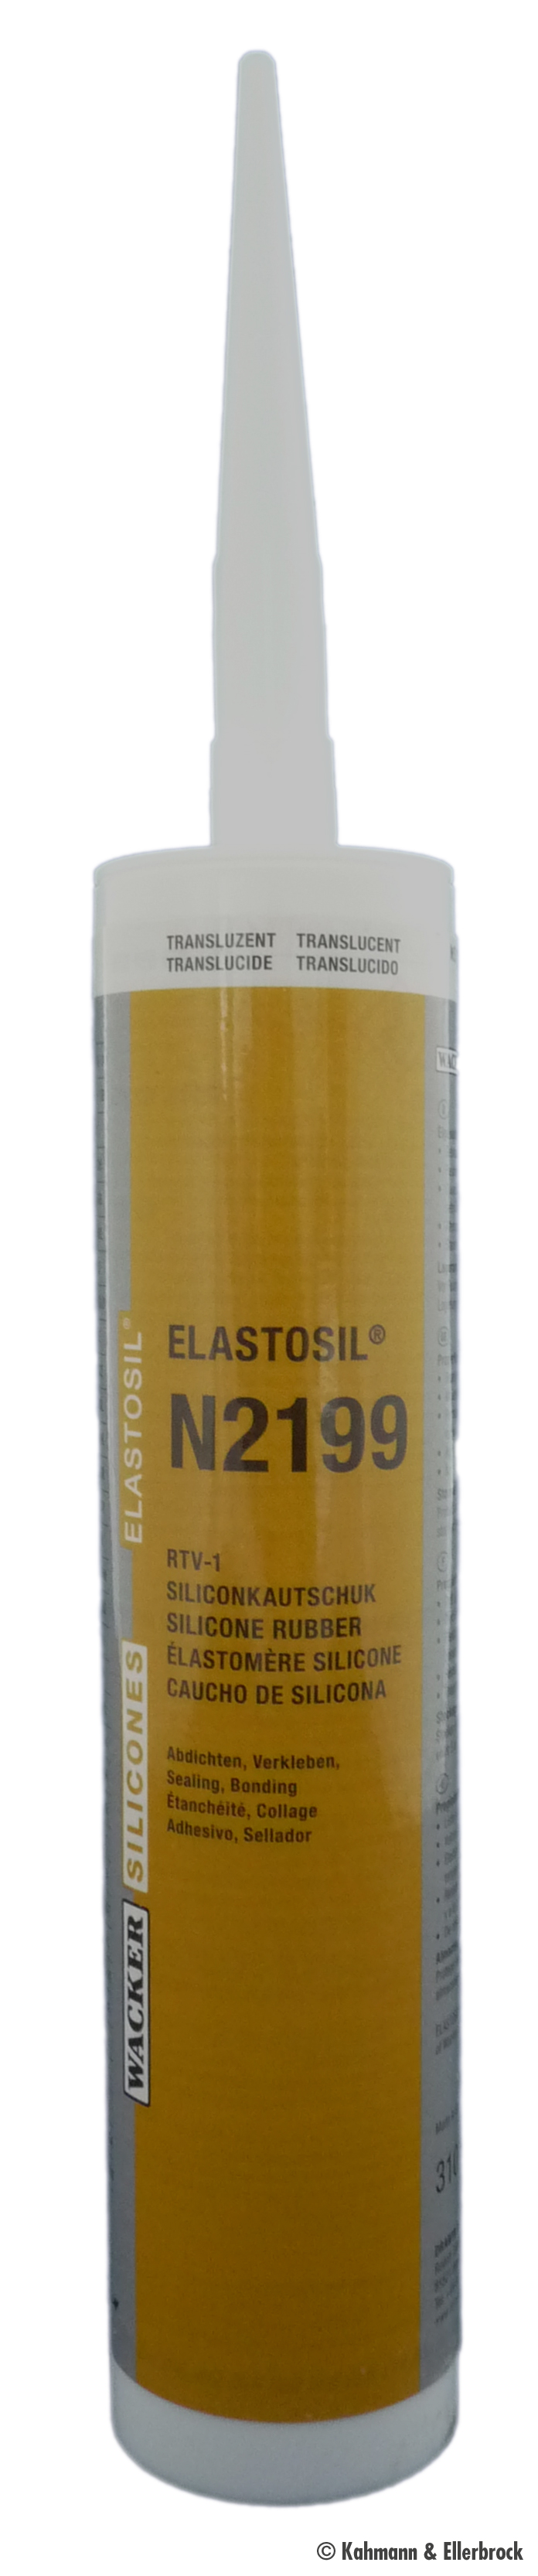 Elastosil N 2199